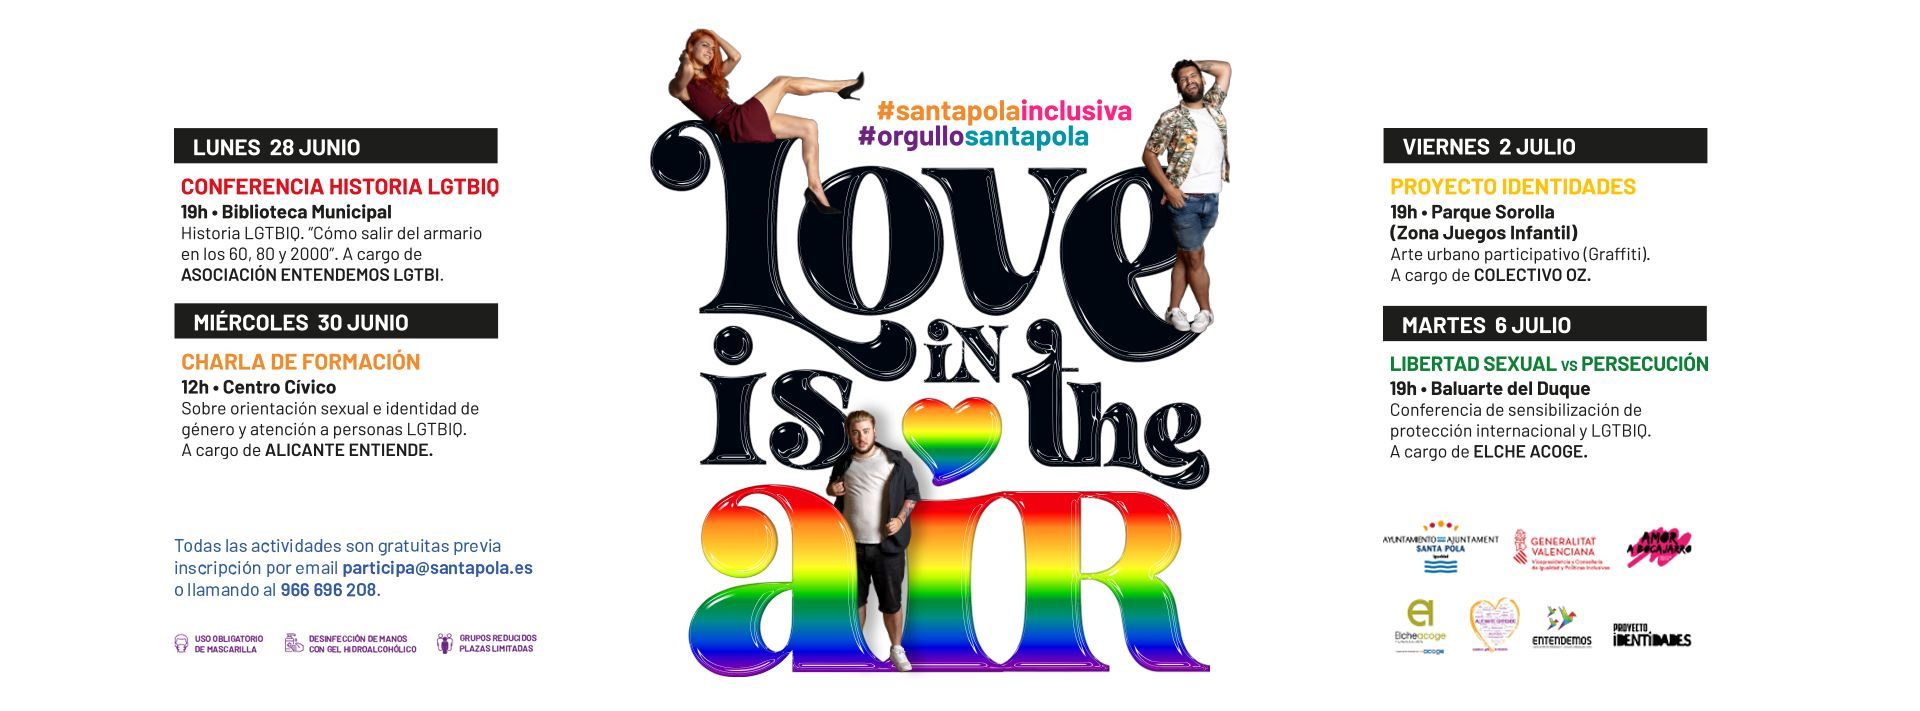 Programa elaborado para conmemorar el Día del Orgullo LGTBIQ